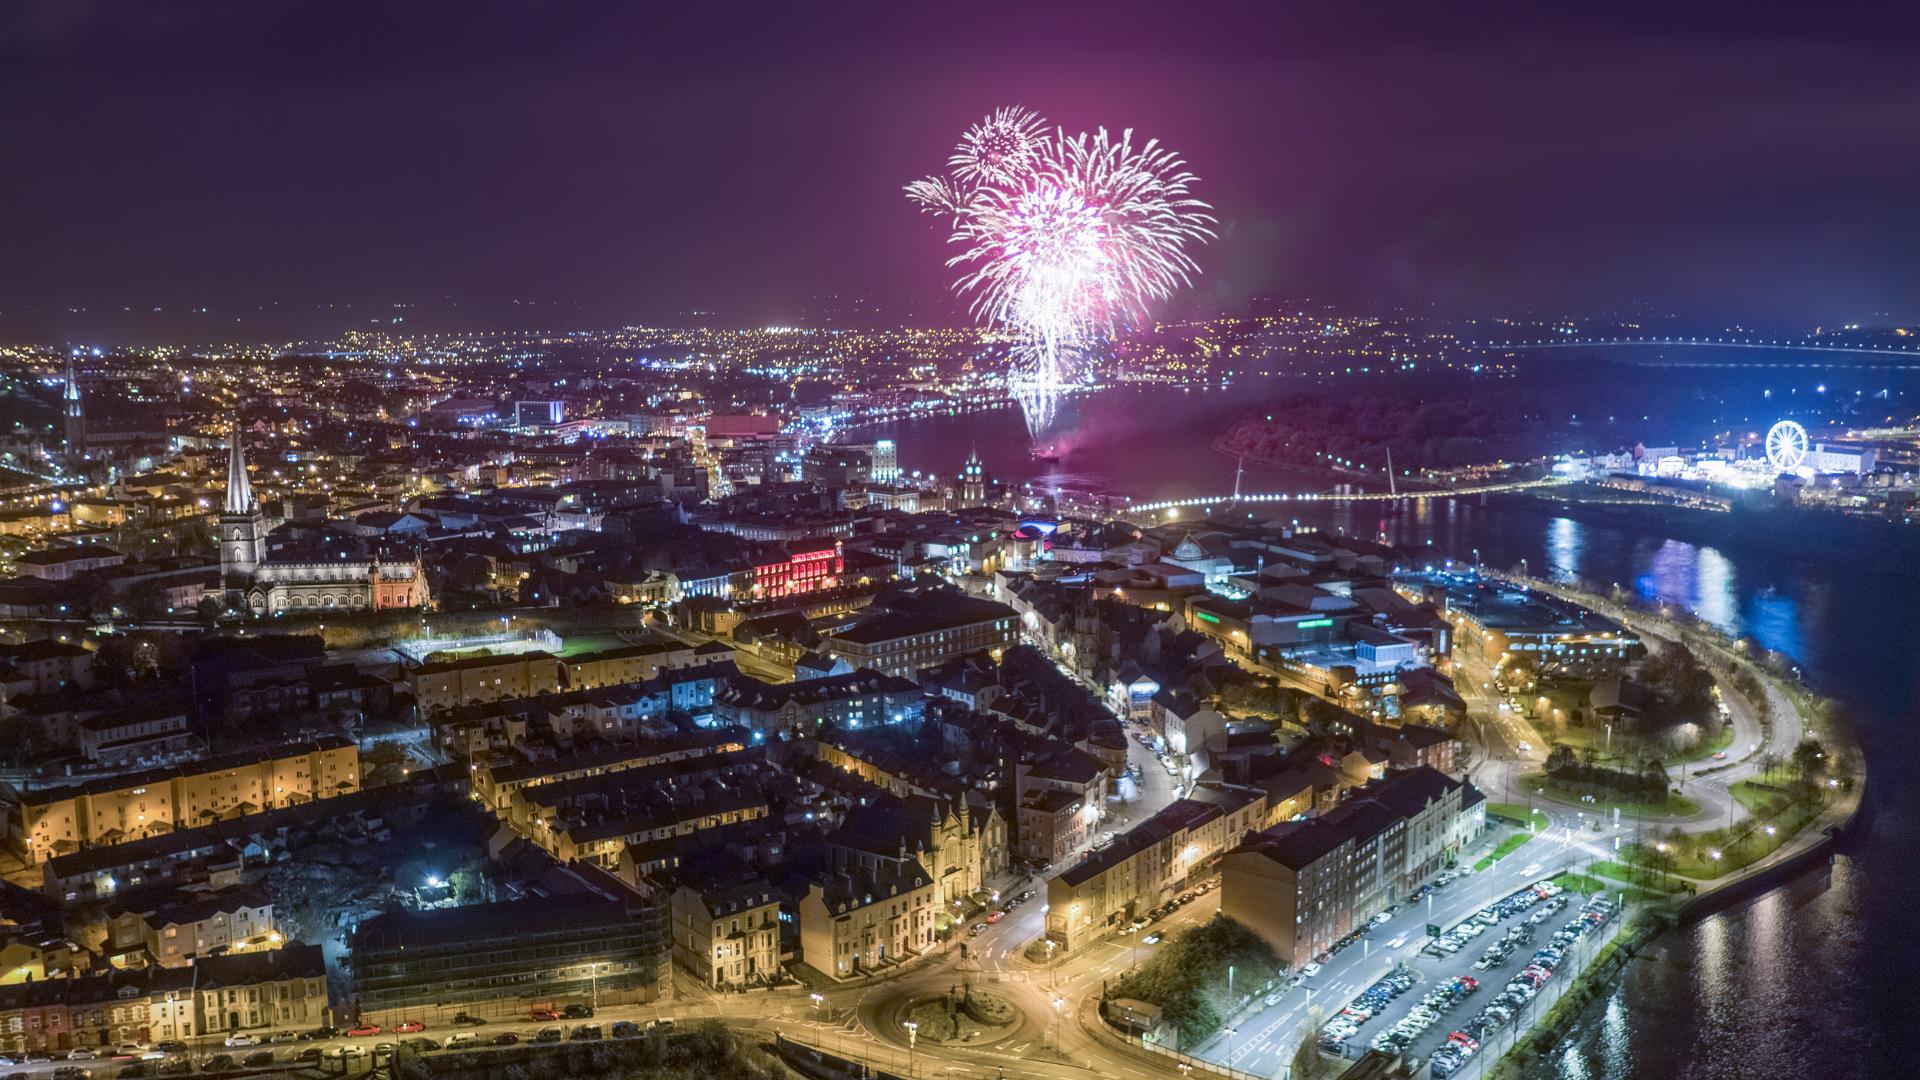 Derry Halloween - Fireworks Finale